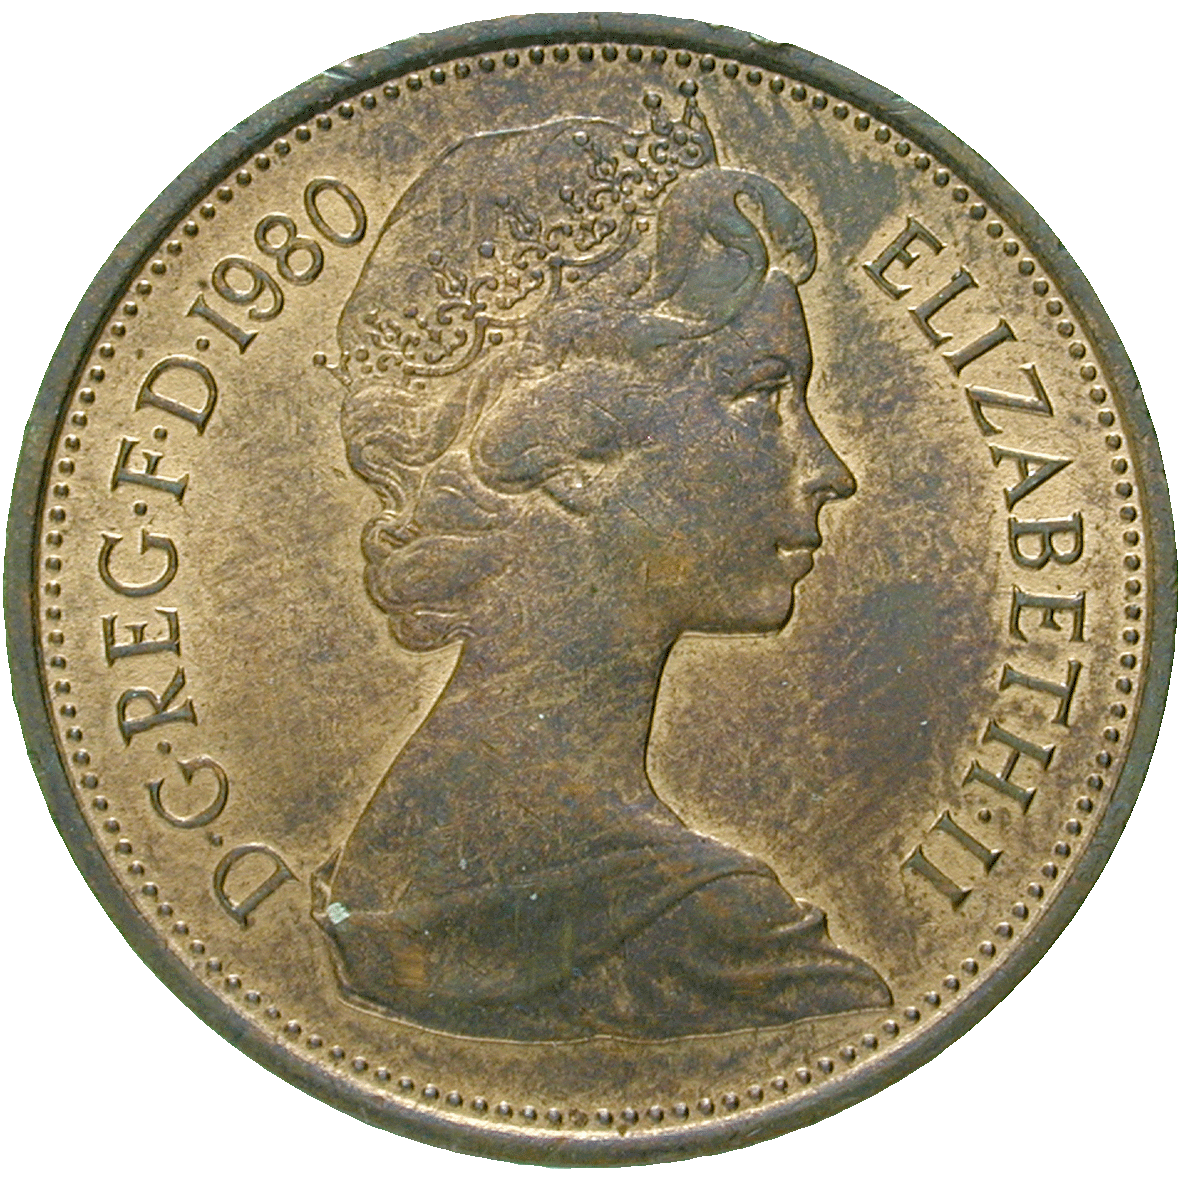 Vereinigtes Königreich Grossbritannien, Elisabeth II., 2 New Pence 1980 (obverse)